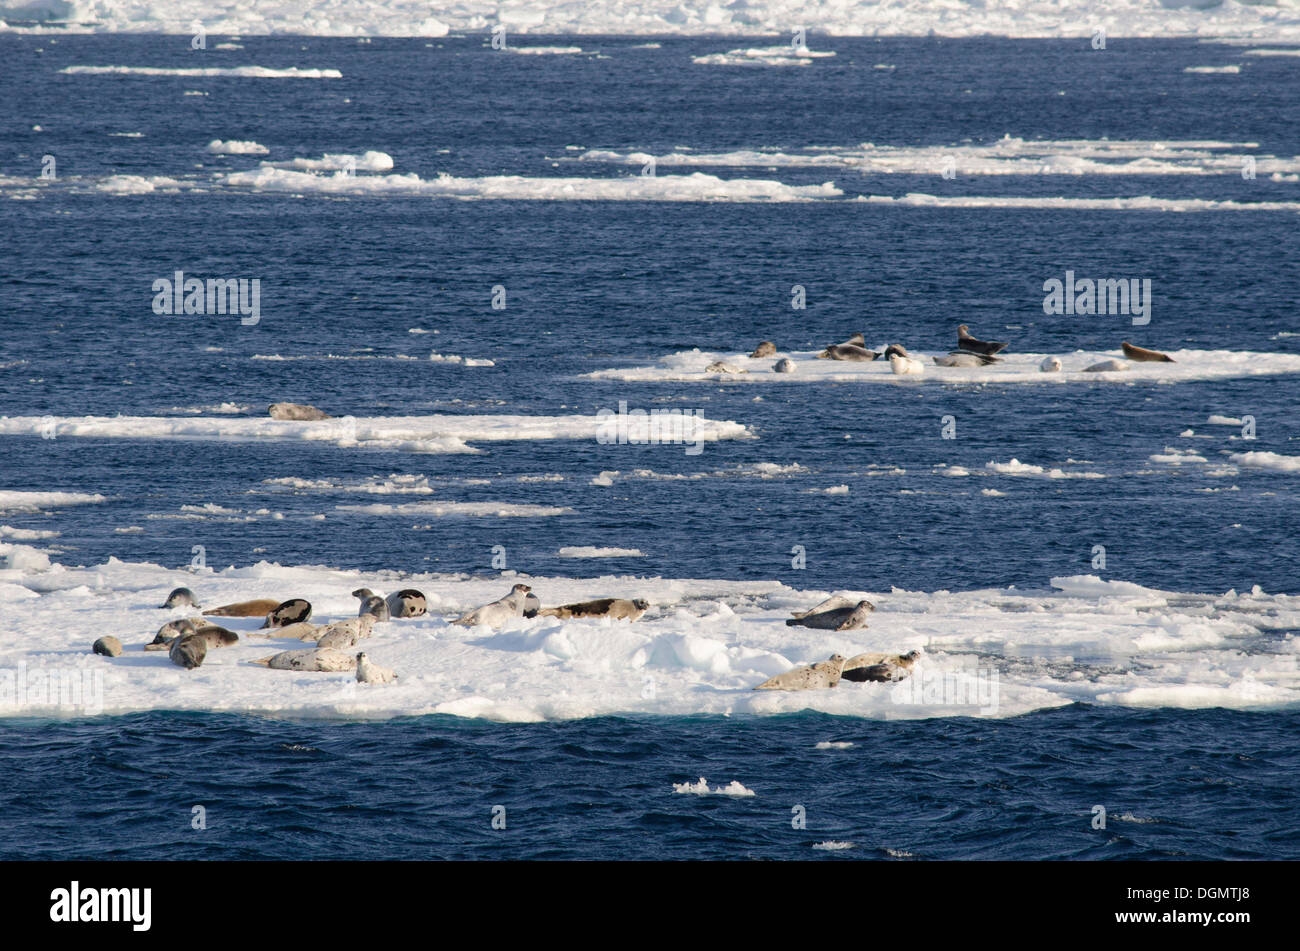 Grupo de focas arpa (Pagophilus groenlandicus, Phoca groenlandica), sobre el hielo, hielo a la deriva, la isla de Spitsbergen Foto de stock